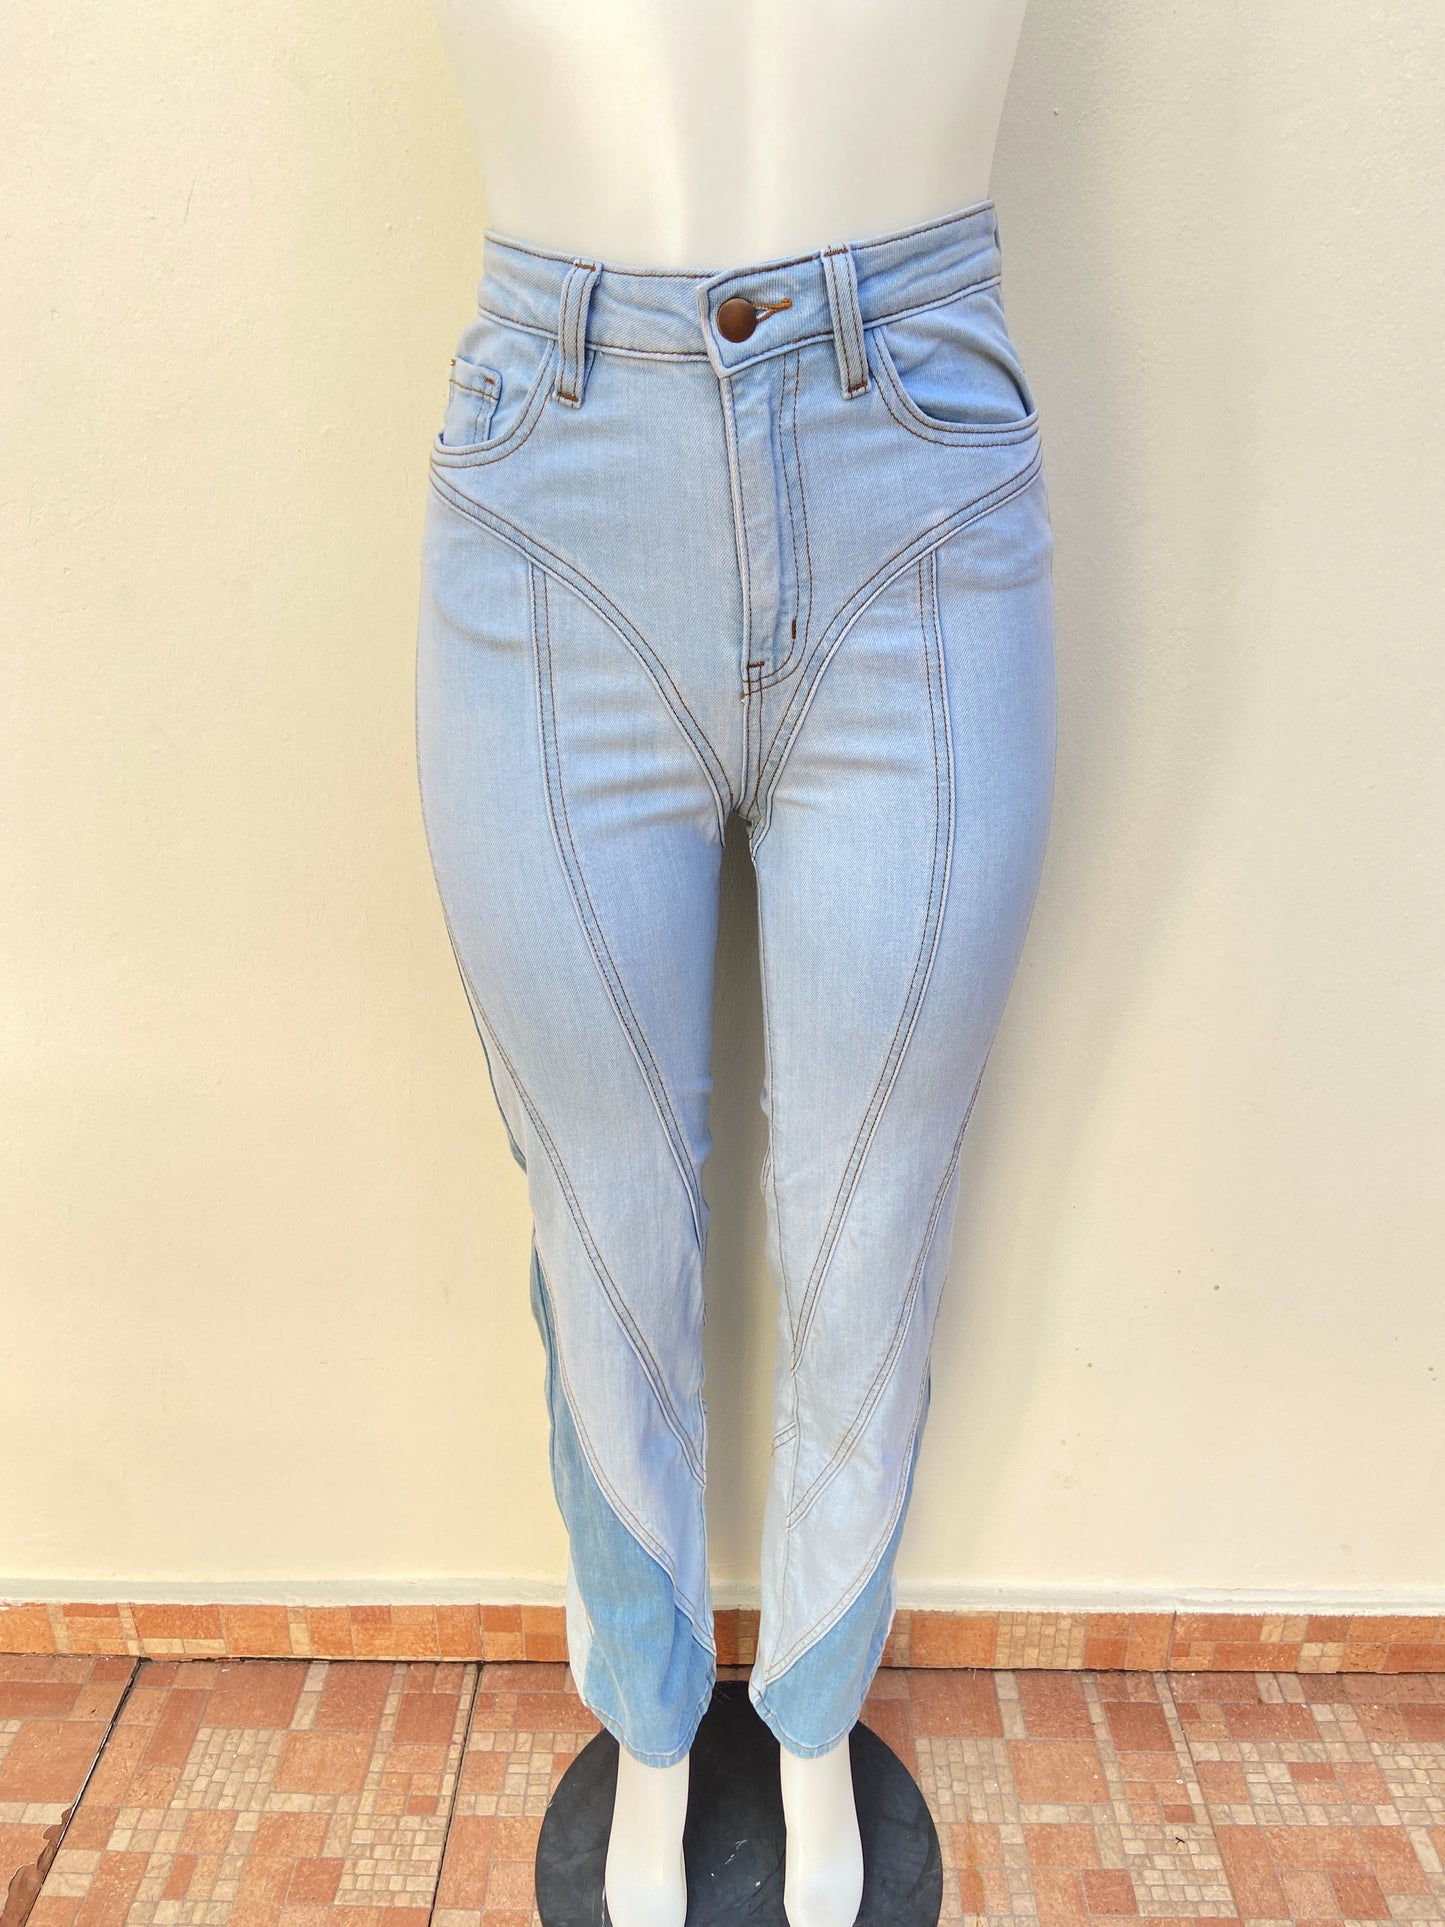 Pantalón Jean Fashion Nova original azul claro con mitad en azul más oscuro y diseños de rayas.